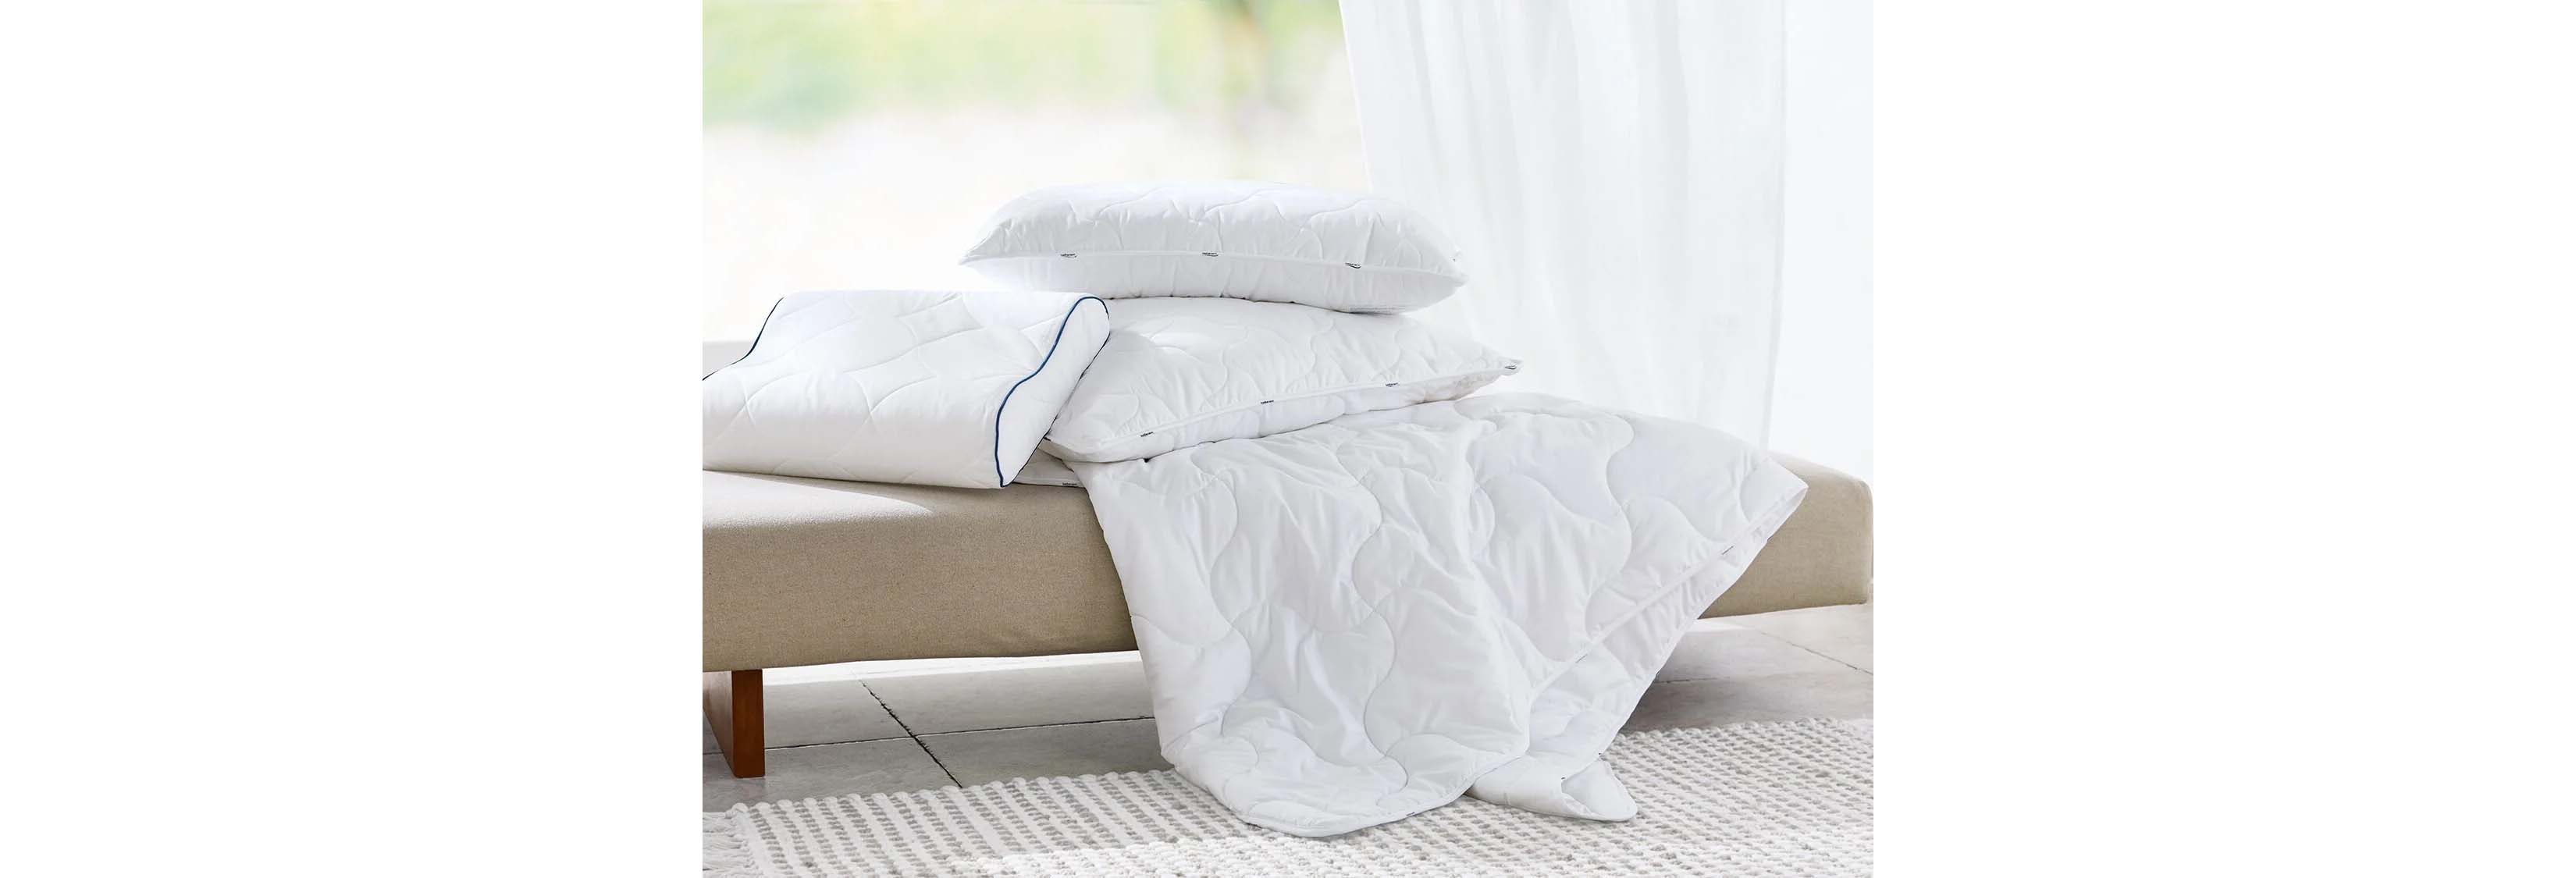 Cómo lavar las almohadas y ¡quitar las manchas amarillas! Foto: bigstock